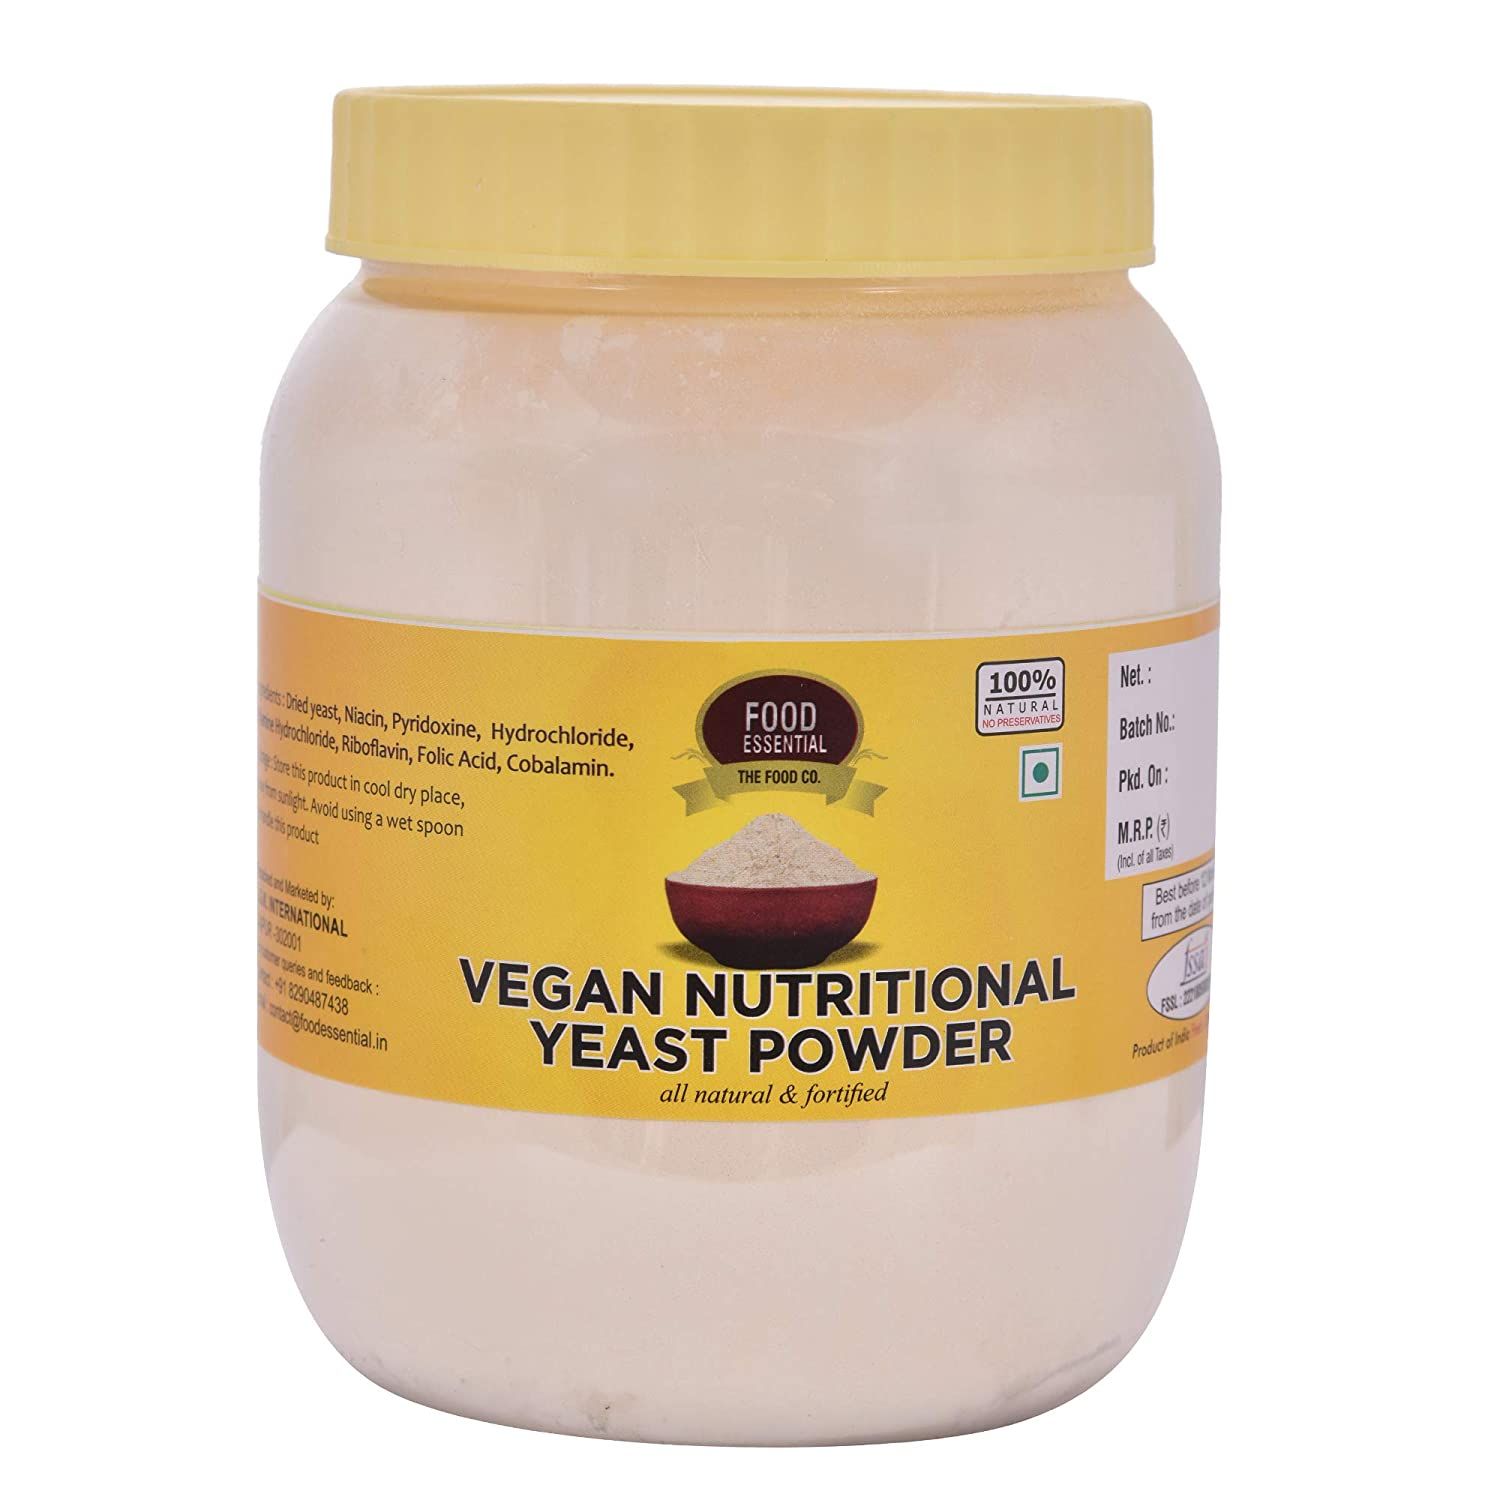 Food Essential Vegan Nutritional Yeast Powder Image